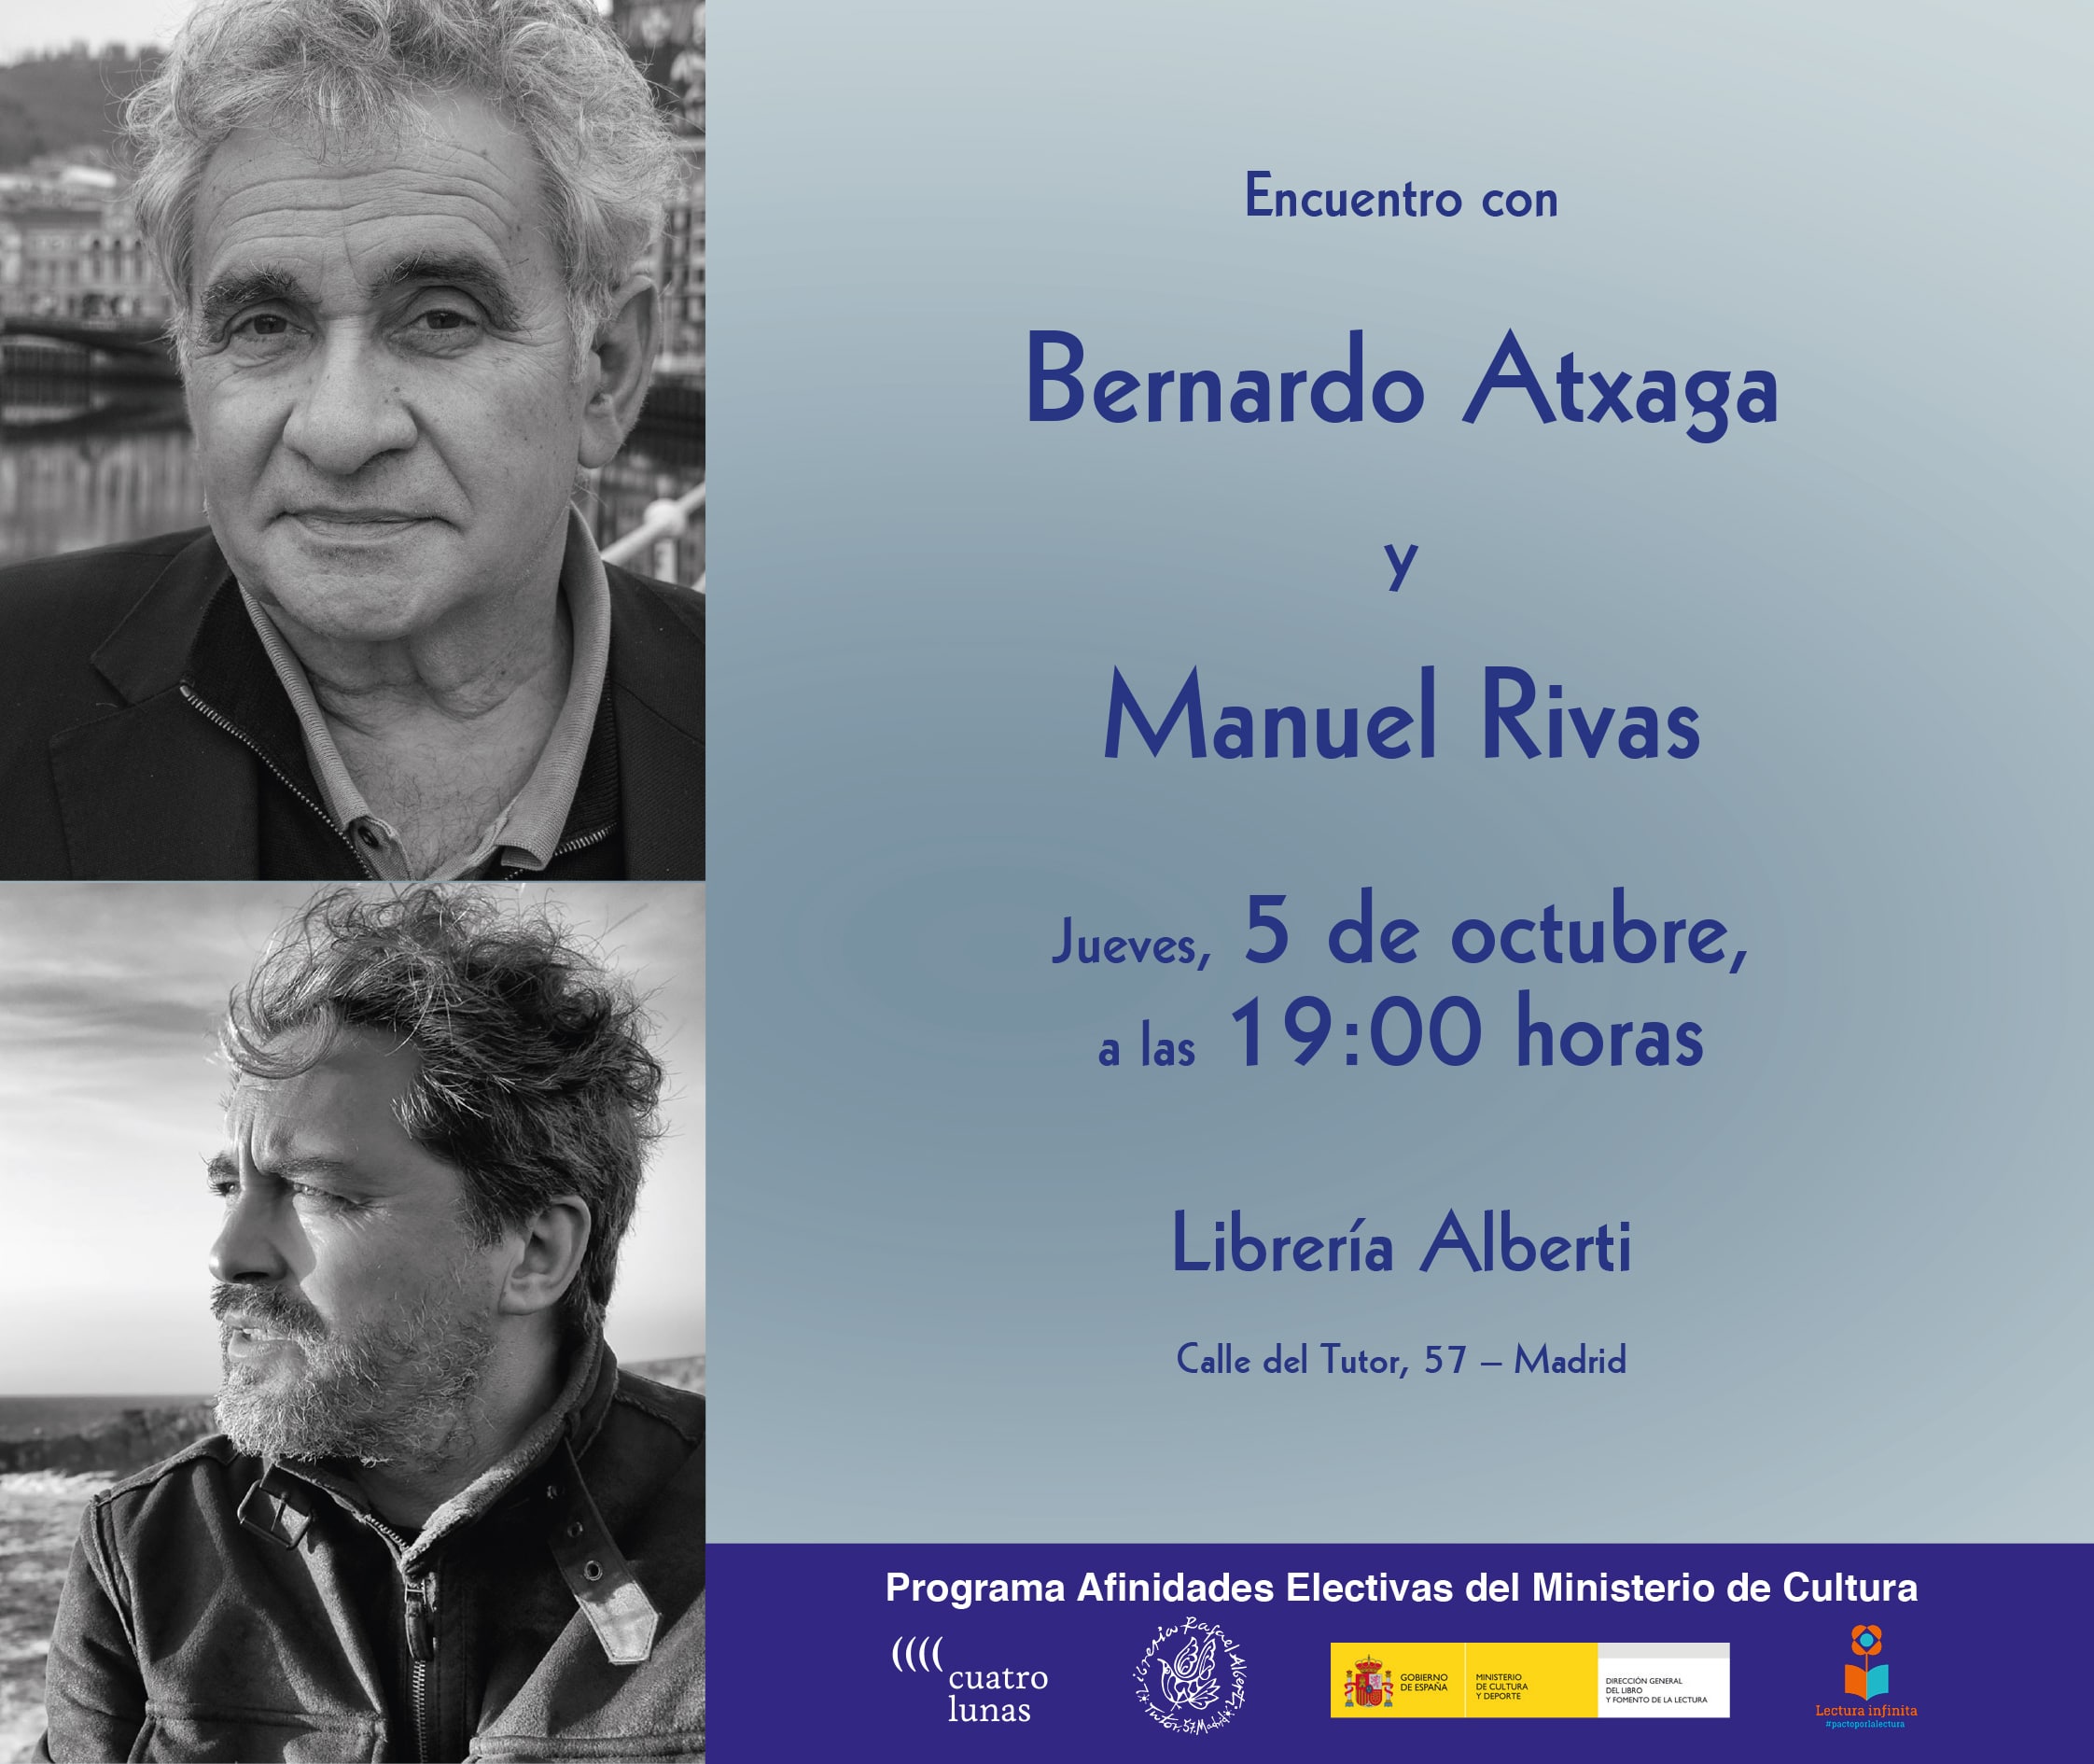 ENCUENTRO CON MANUEL RIVAS Y BERNARDO ATXAGA EN LA LIBRERÍA ALBERTI (MADRID)